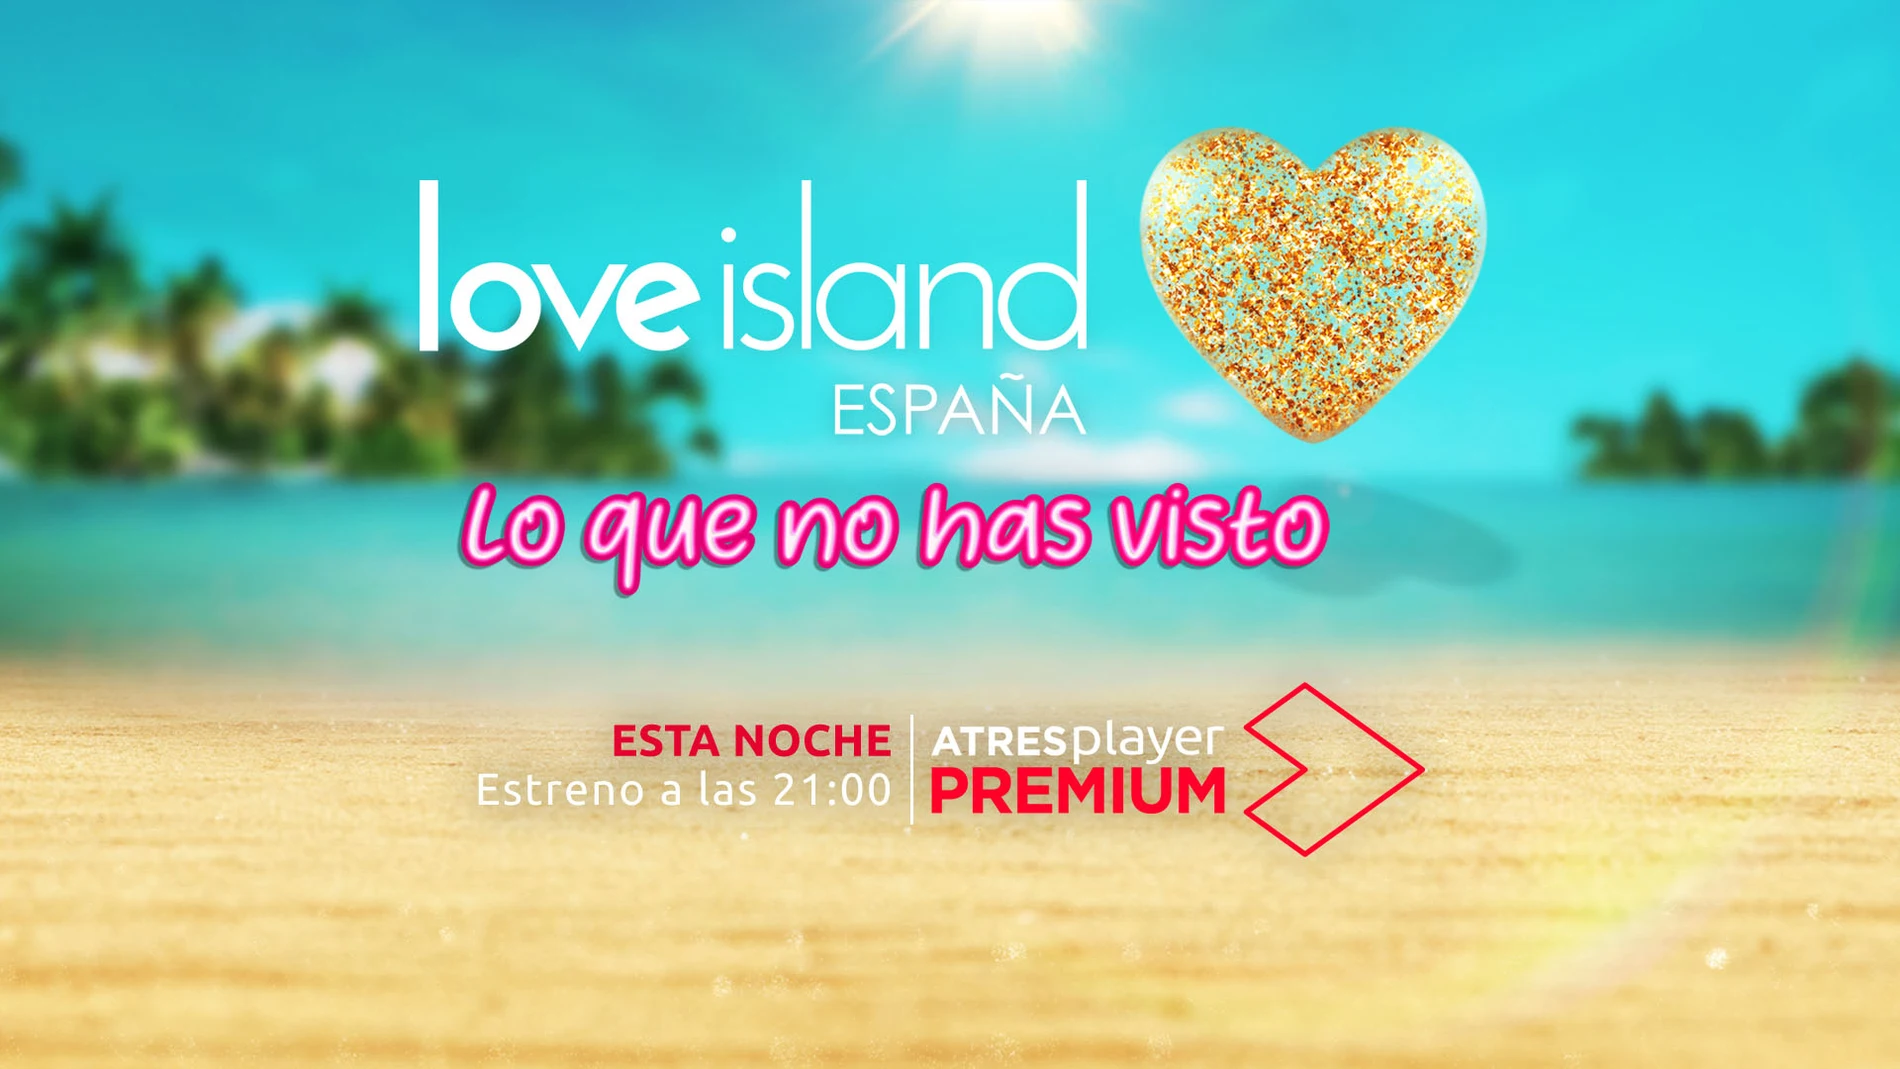 Love Island España, lo que no has visto (sección) ESTA NOCHE